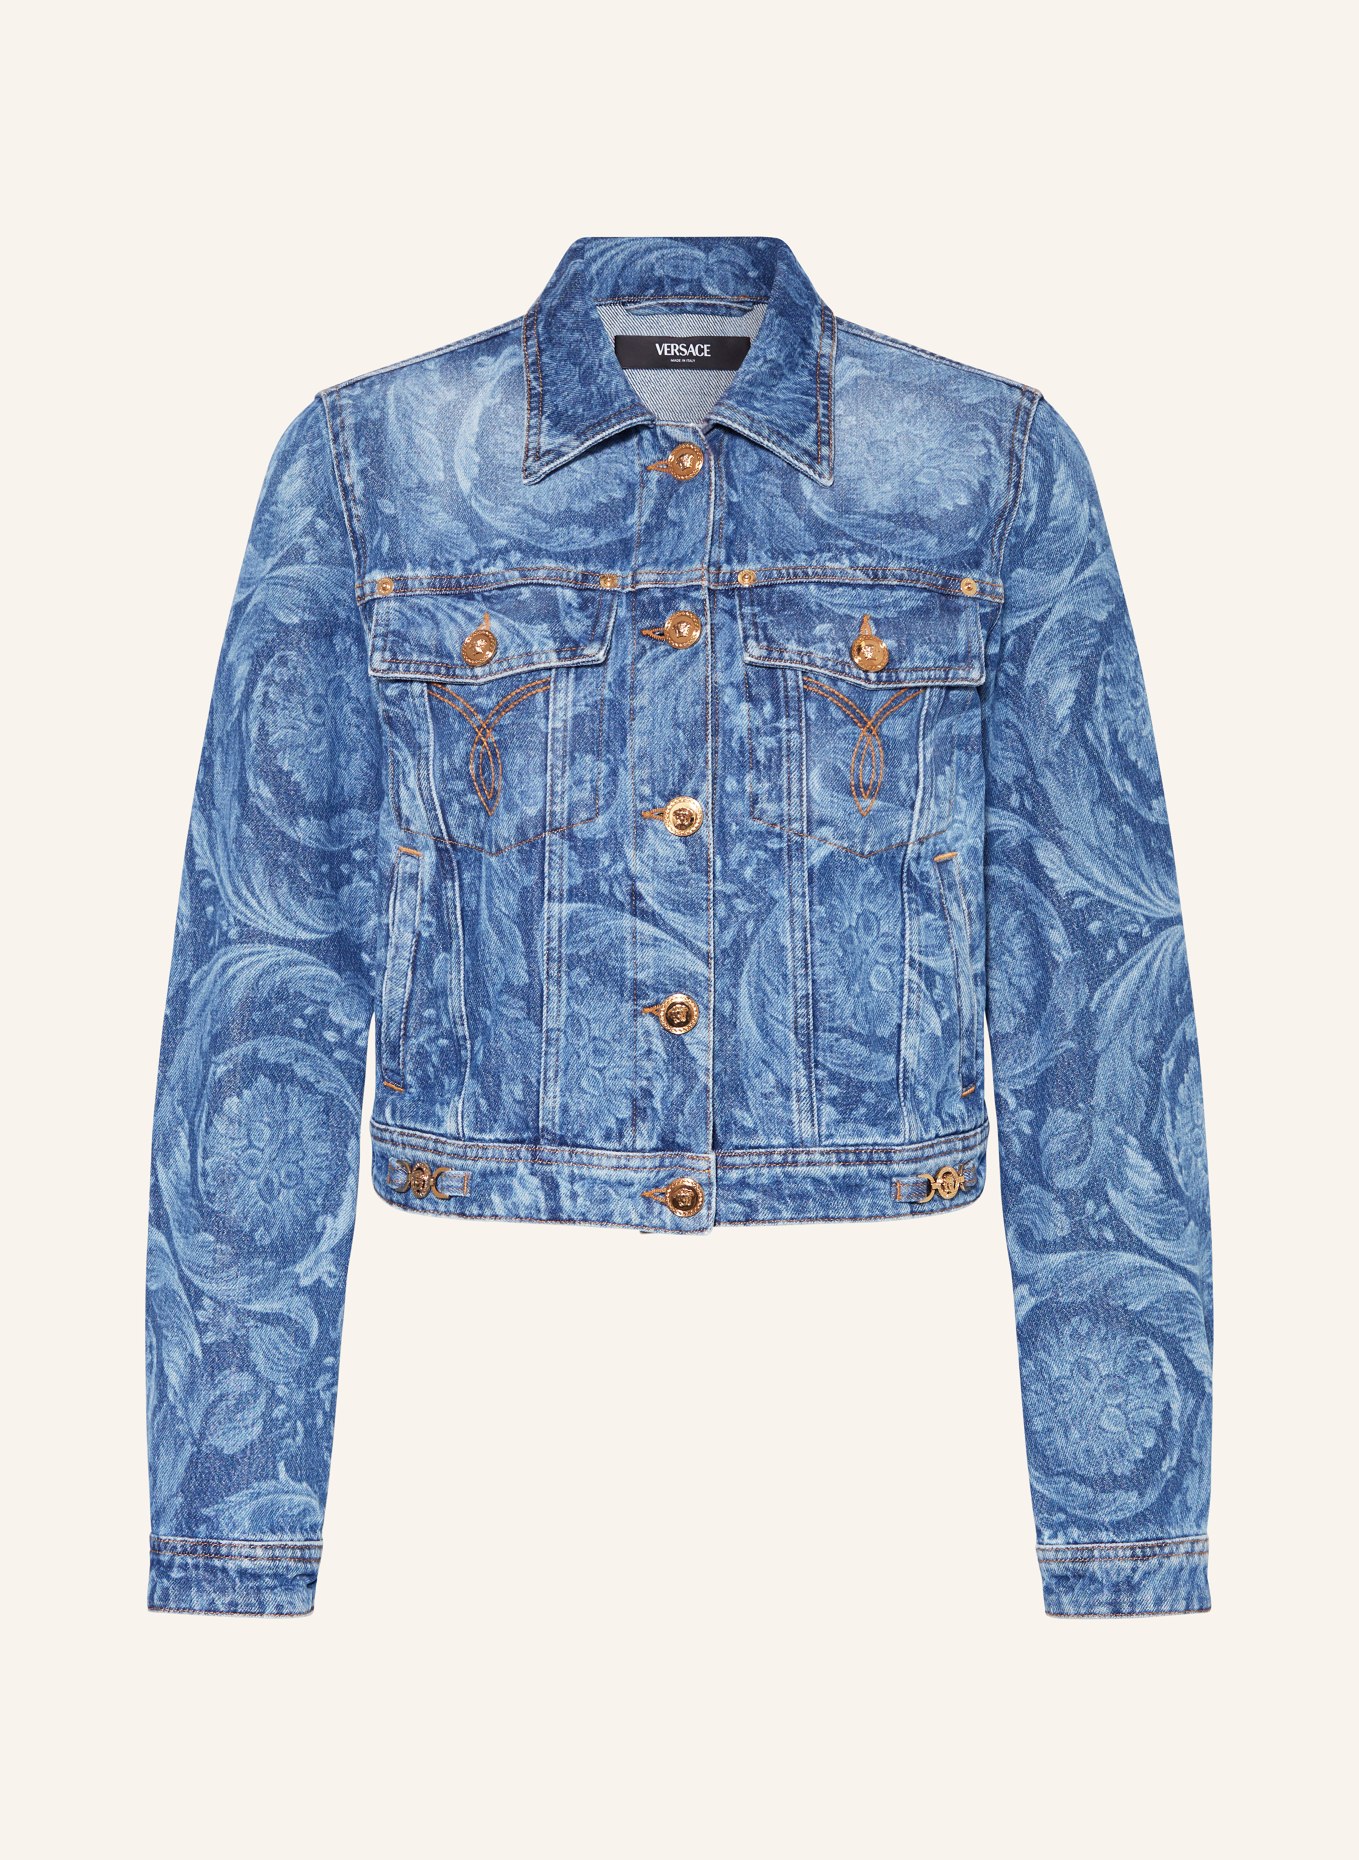 VERSACE Denim jacket, Color: BLUE/ LIGHT BLUE (Image 1)